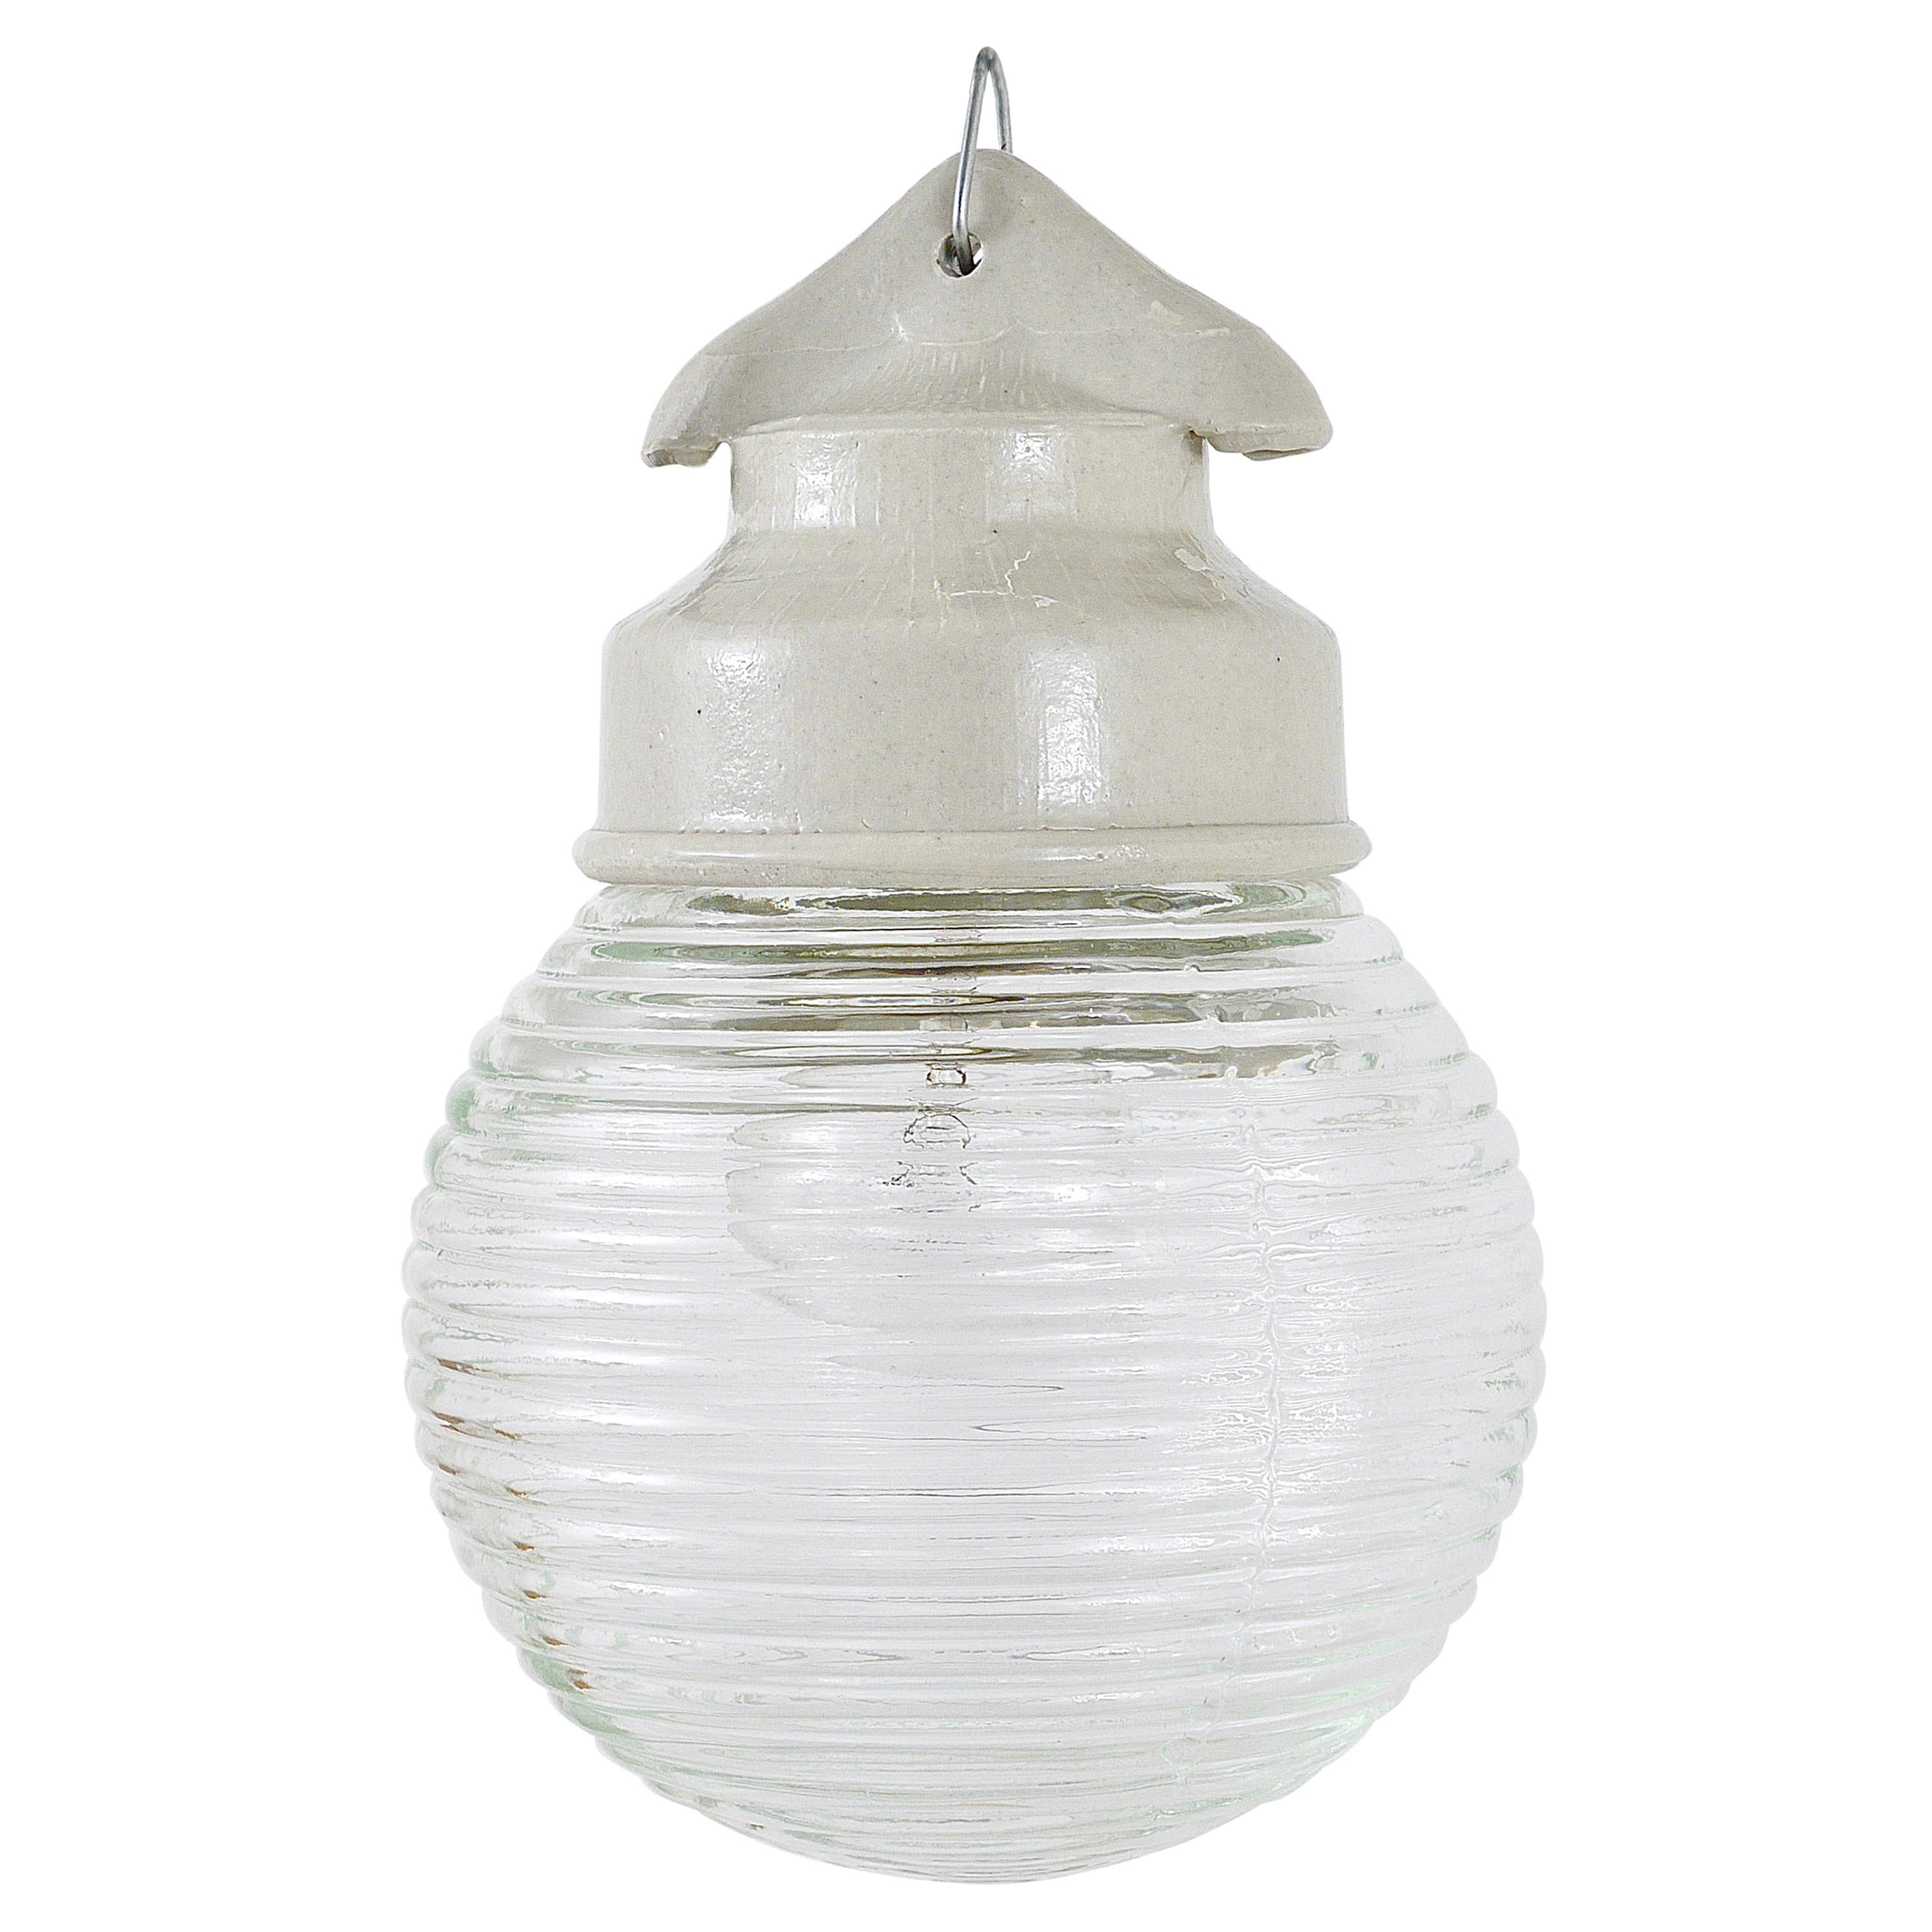 Up to 6 Unused Holophane Porcelain Honey Jar Industrial Pendant Lights